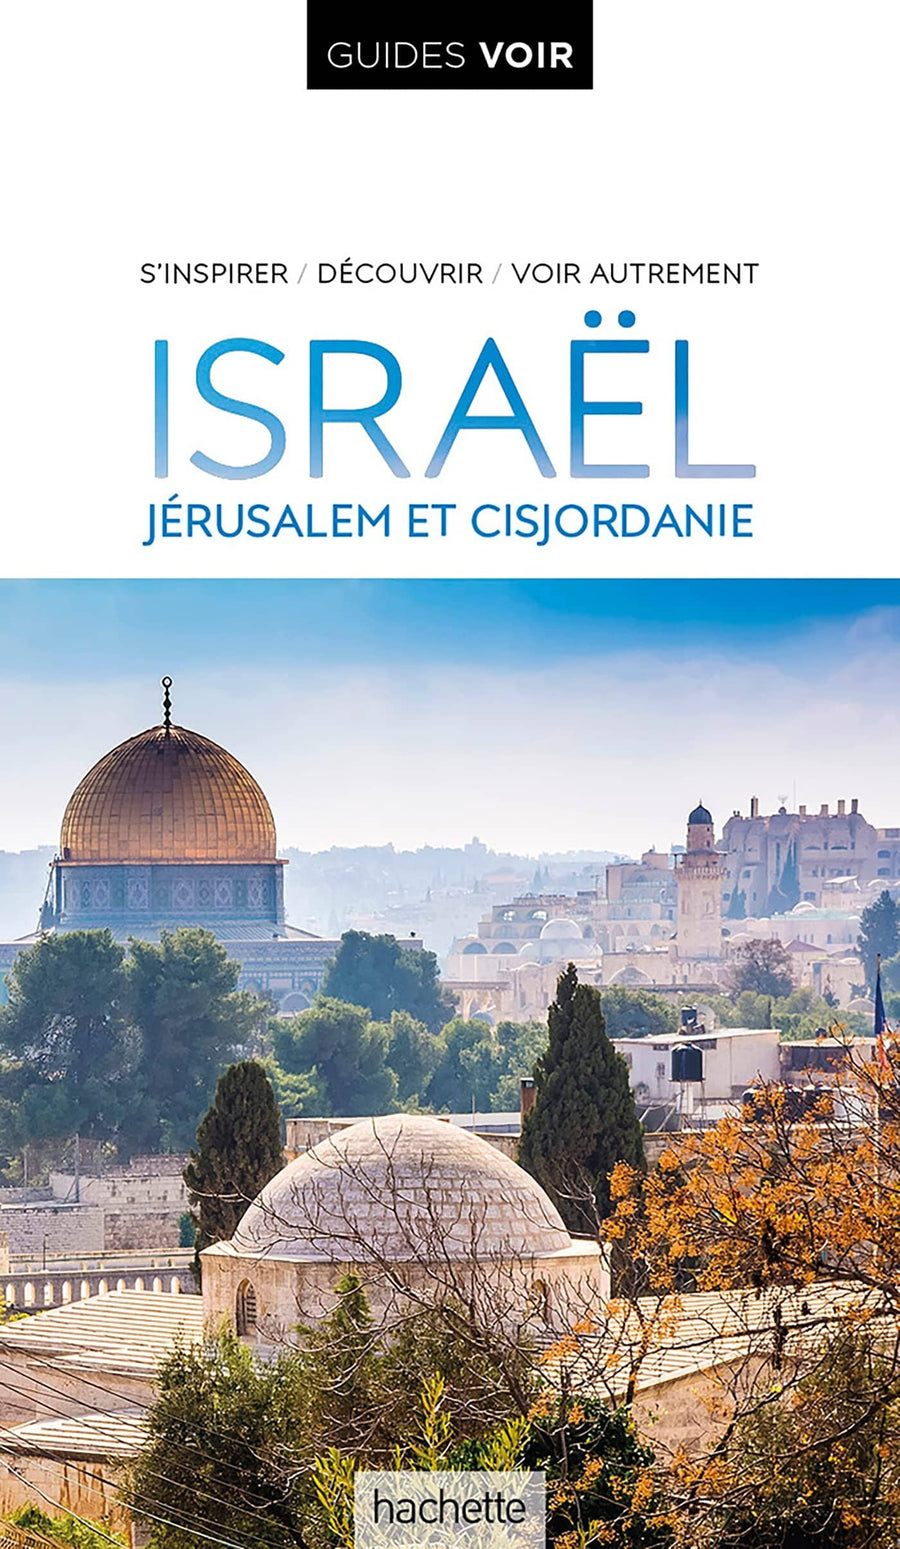 Guide de voyage - Israël, Jérusalem, Cisjordanie - Édition 2023 | Guides Voir guide de voyage Guides Voir 